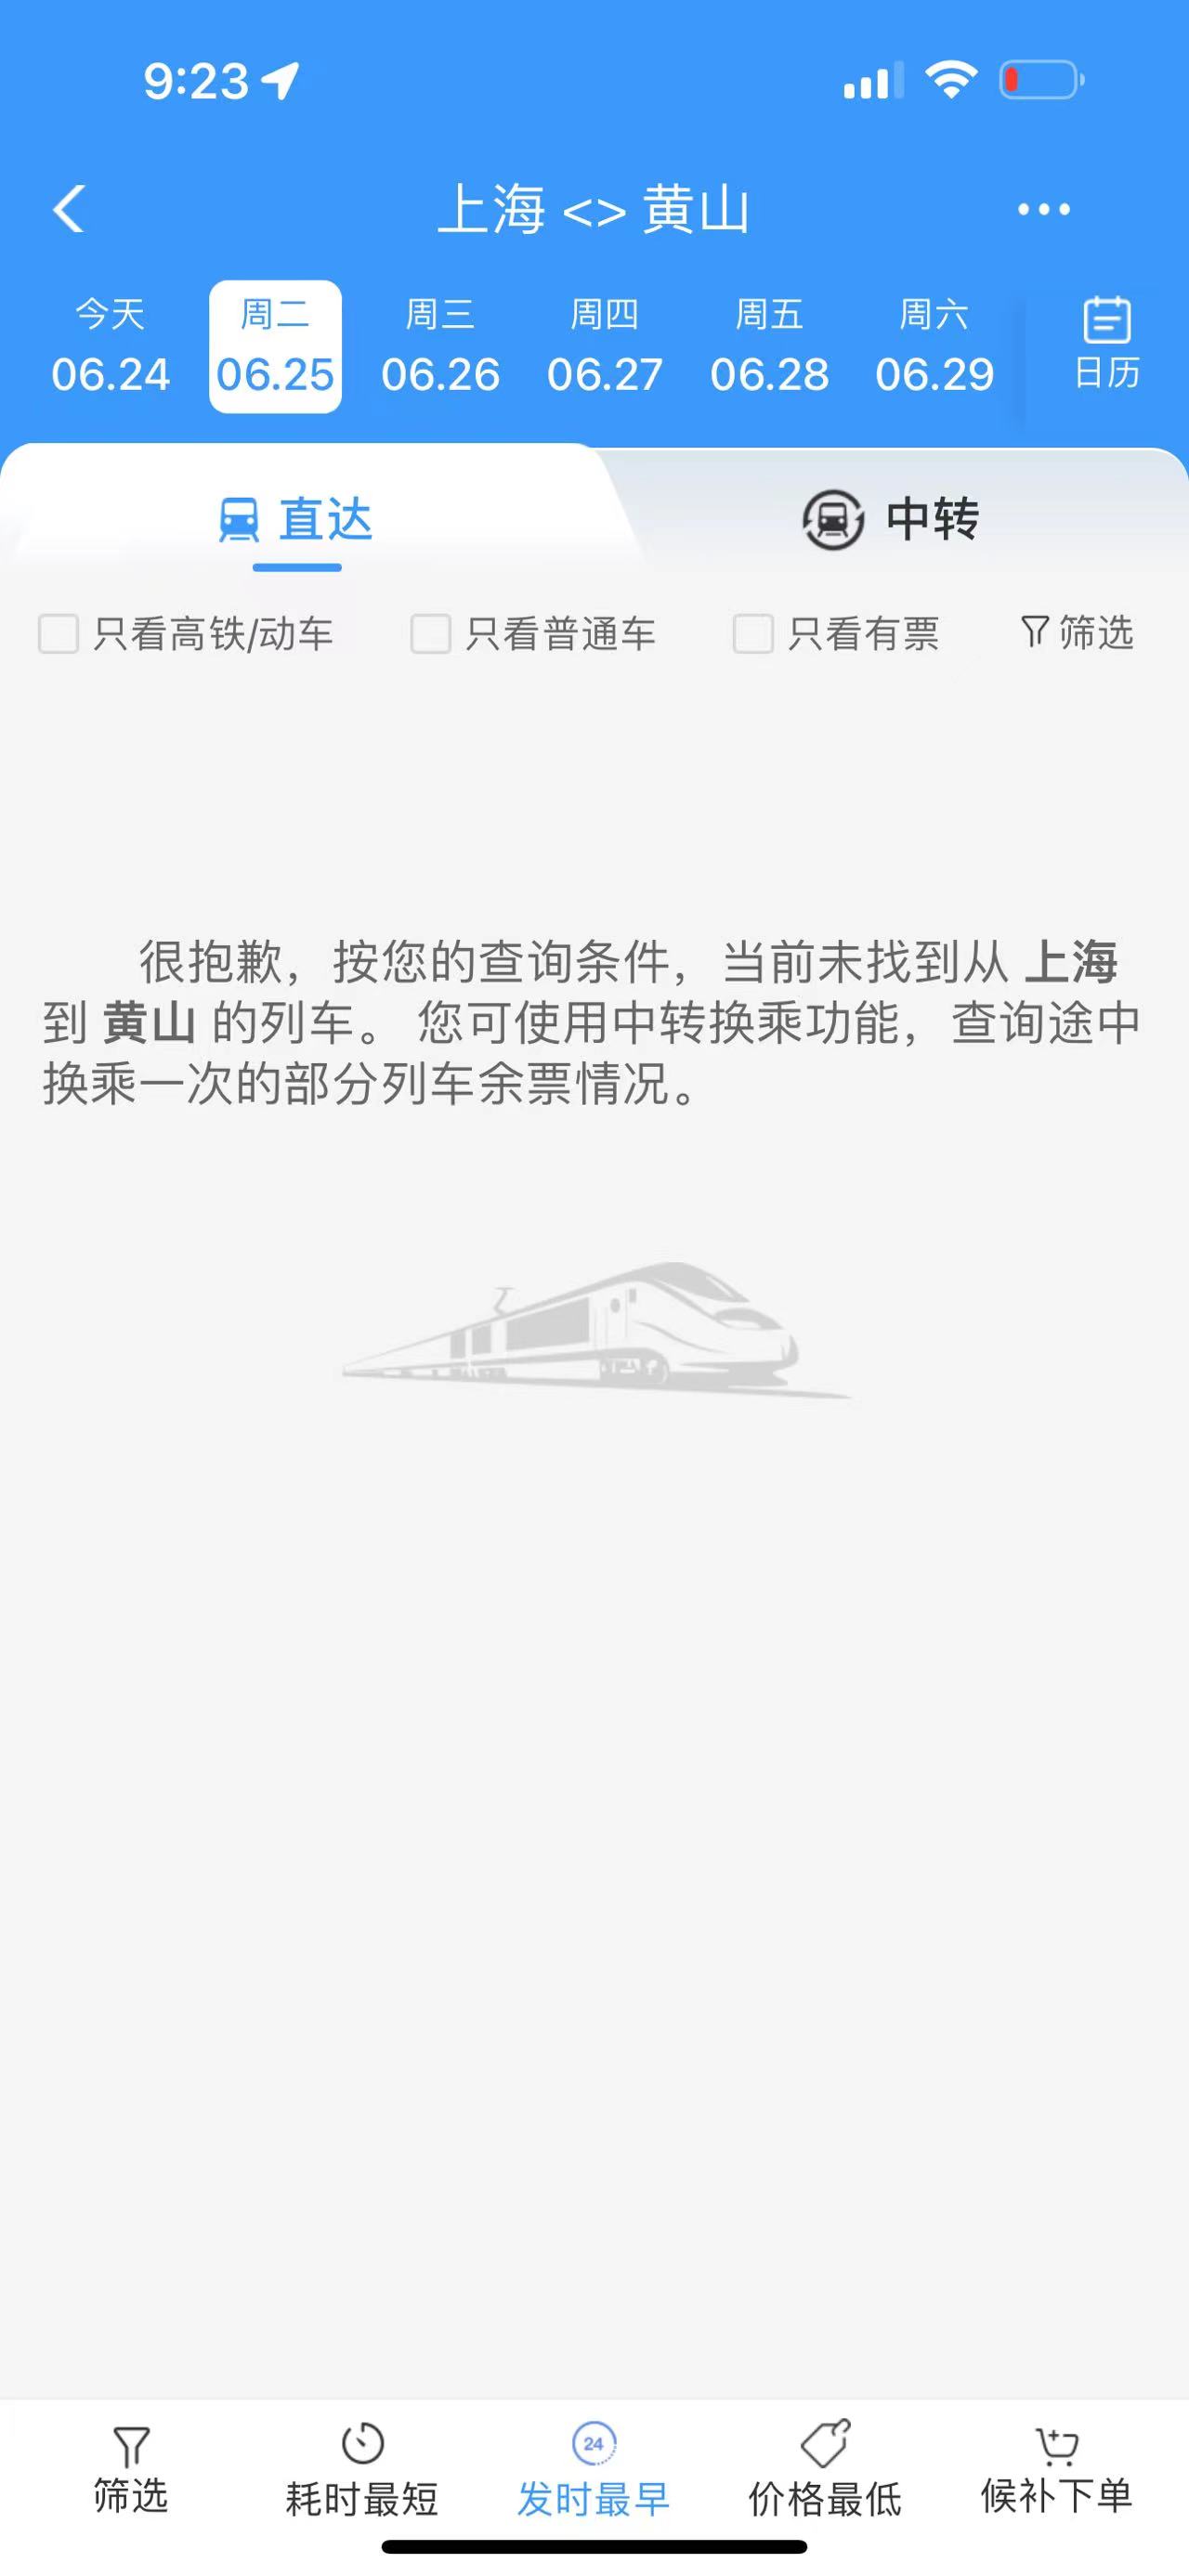 安徽浙江暴雨致部分铁路区段水灾，列车停运至26日插图